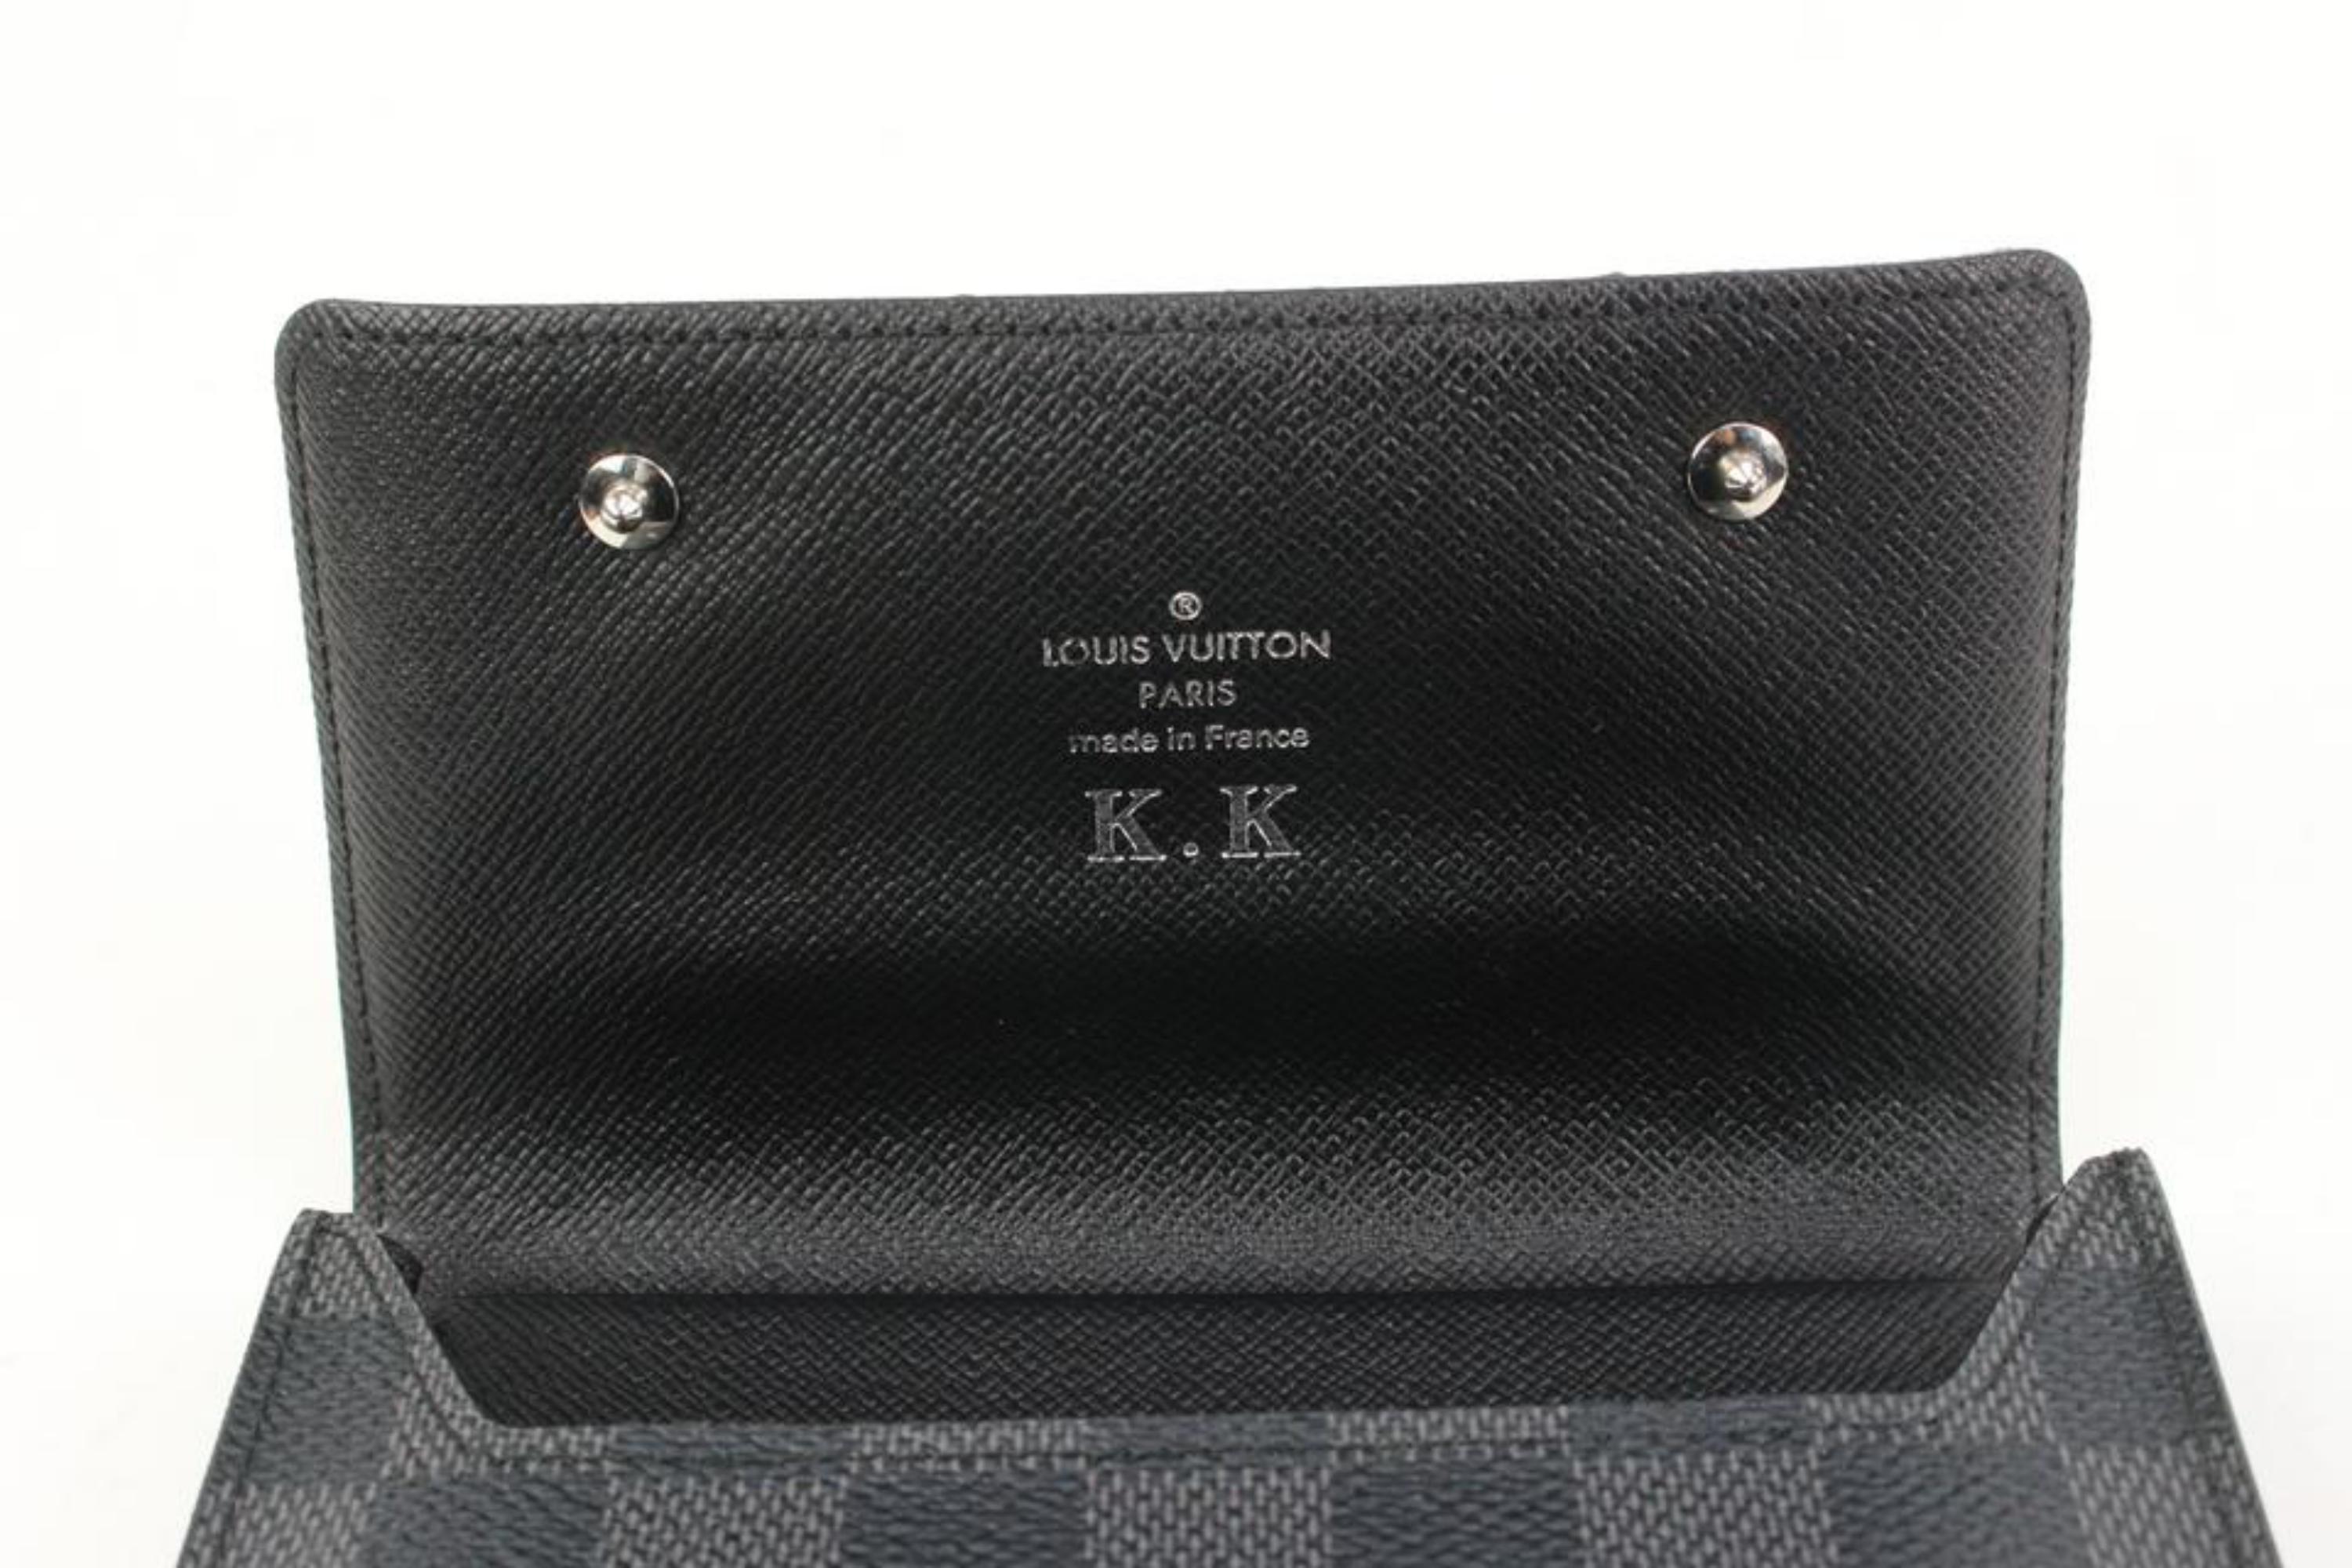 Louis Vuitton Black Damier Graphite Compact Snap Wallet 2lk318s For Sale 6